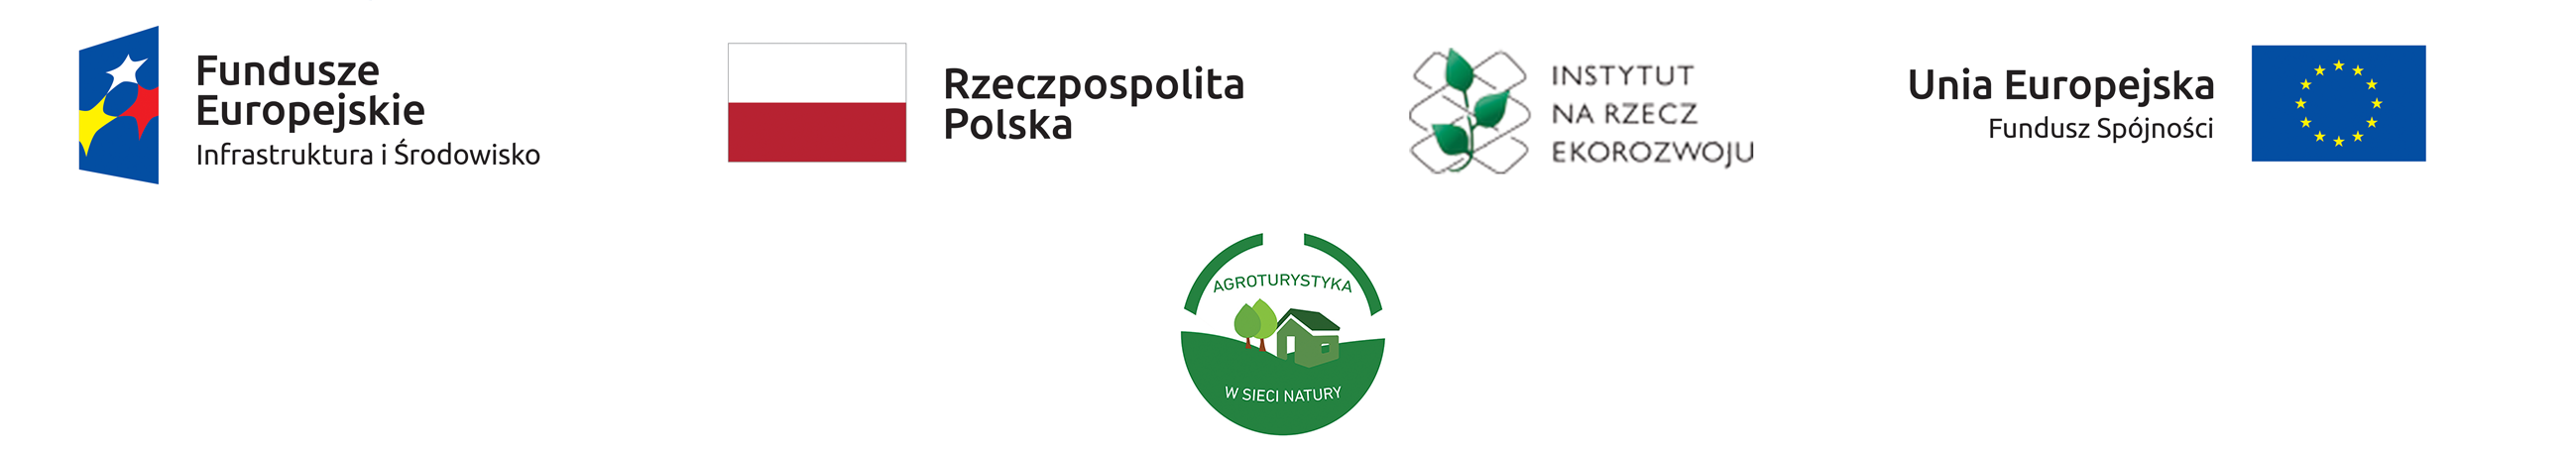 logo projekt agroturystyka na wsi